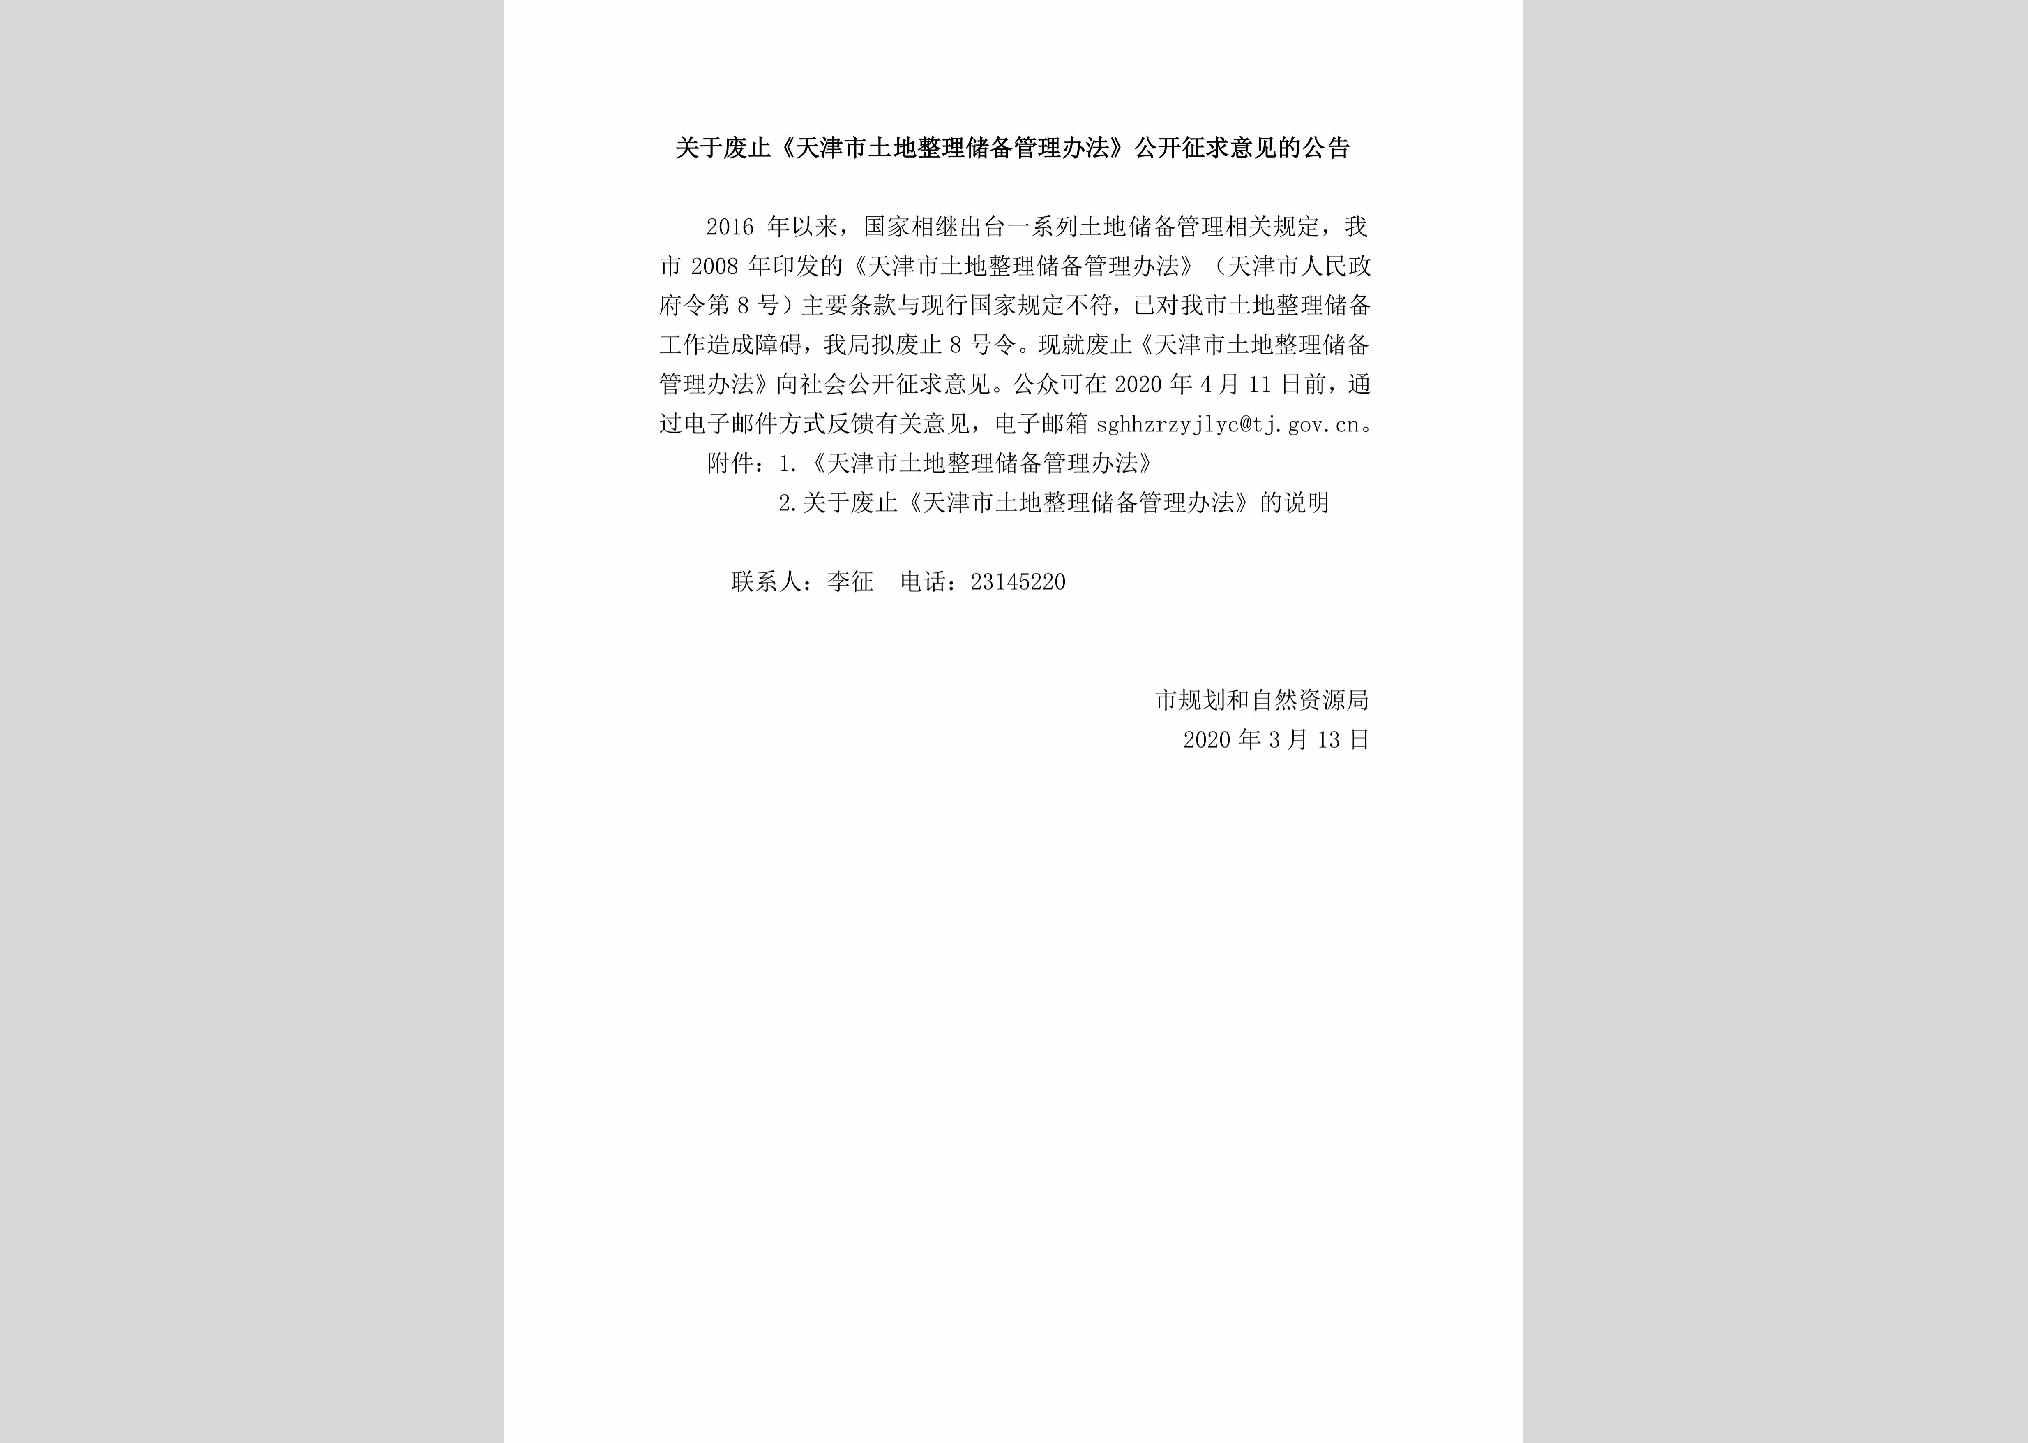 FZTJSTDZ：关于废止《天津市土地整理储备管理办法》公开征求意见的公告